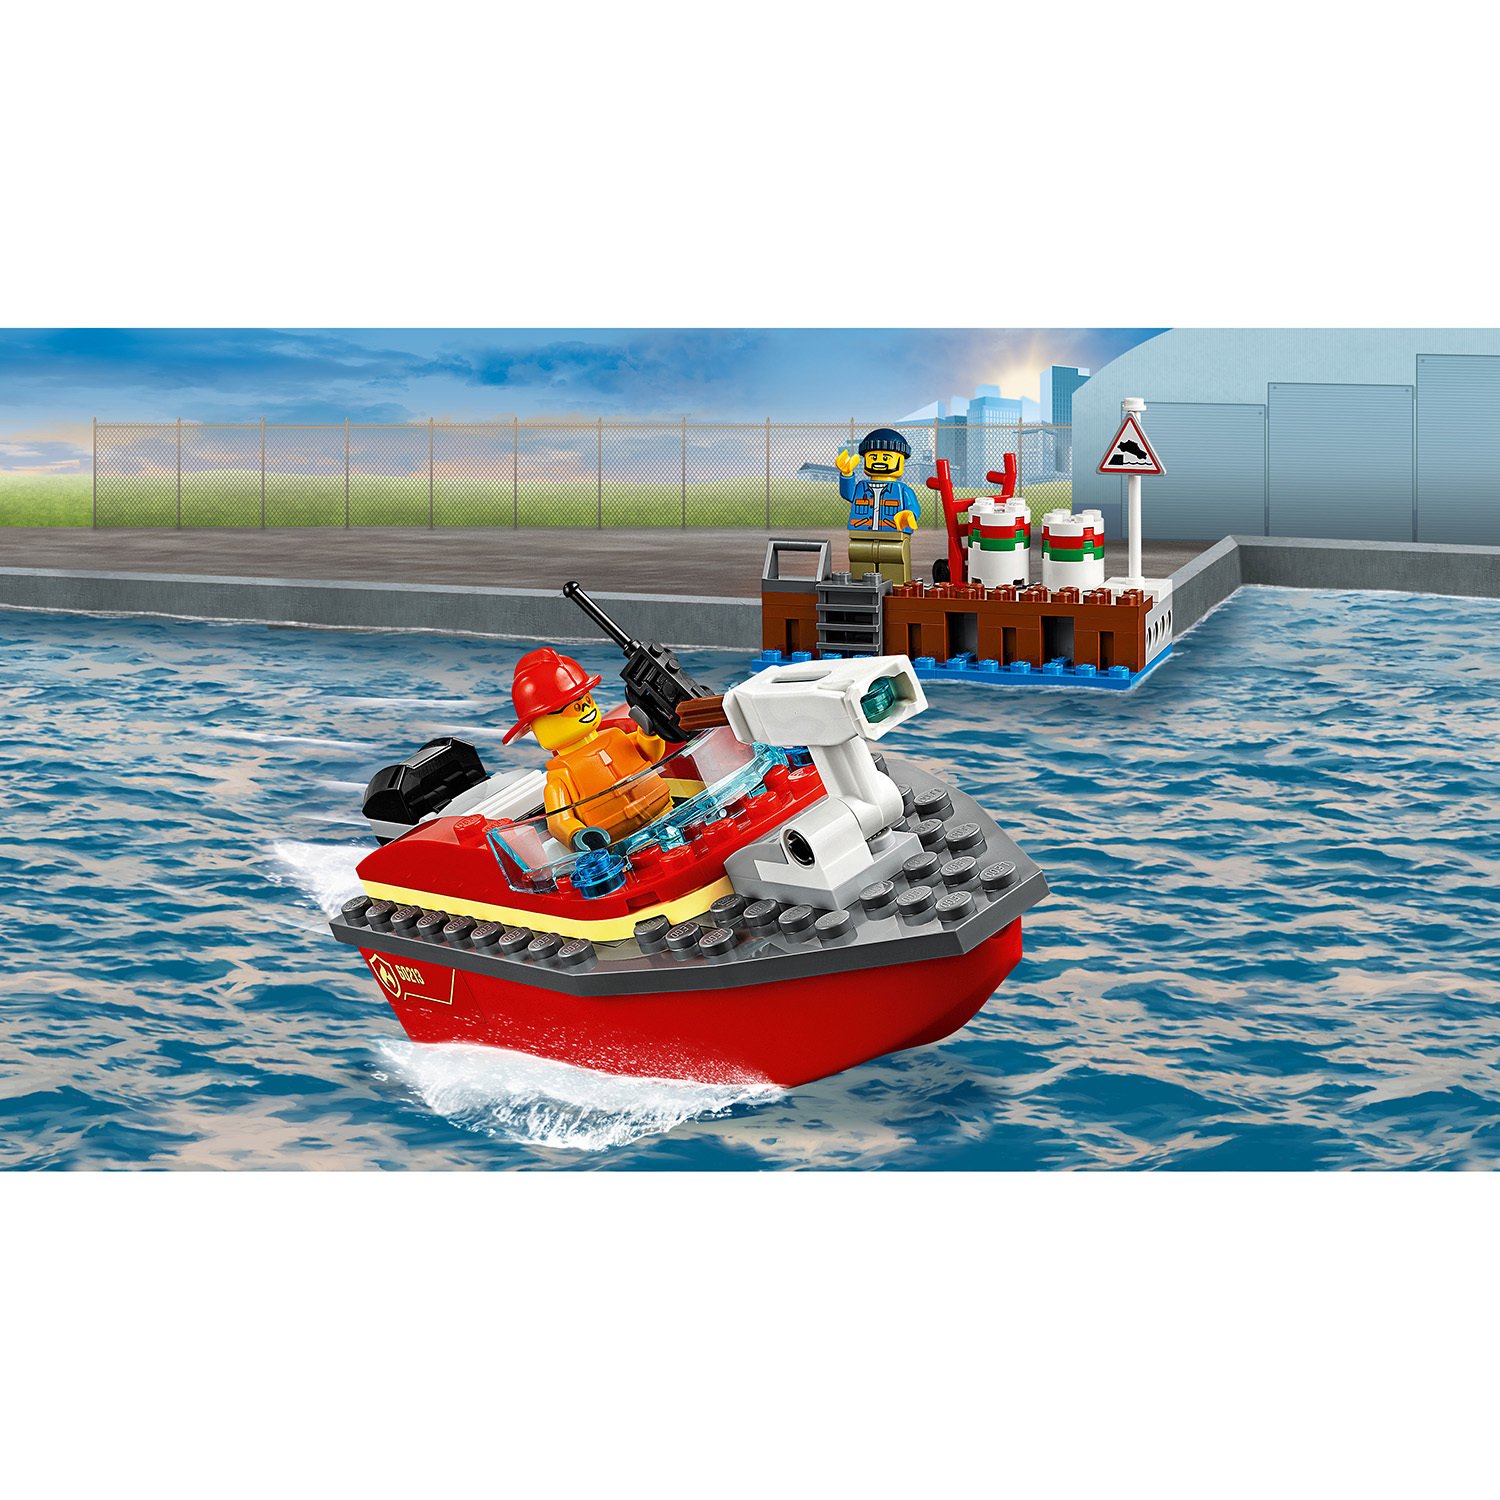 Конструктор из серии Lego City Fire - Пожар в порту  